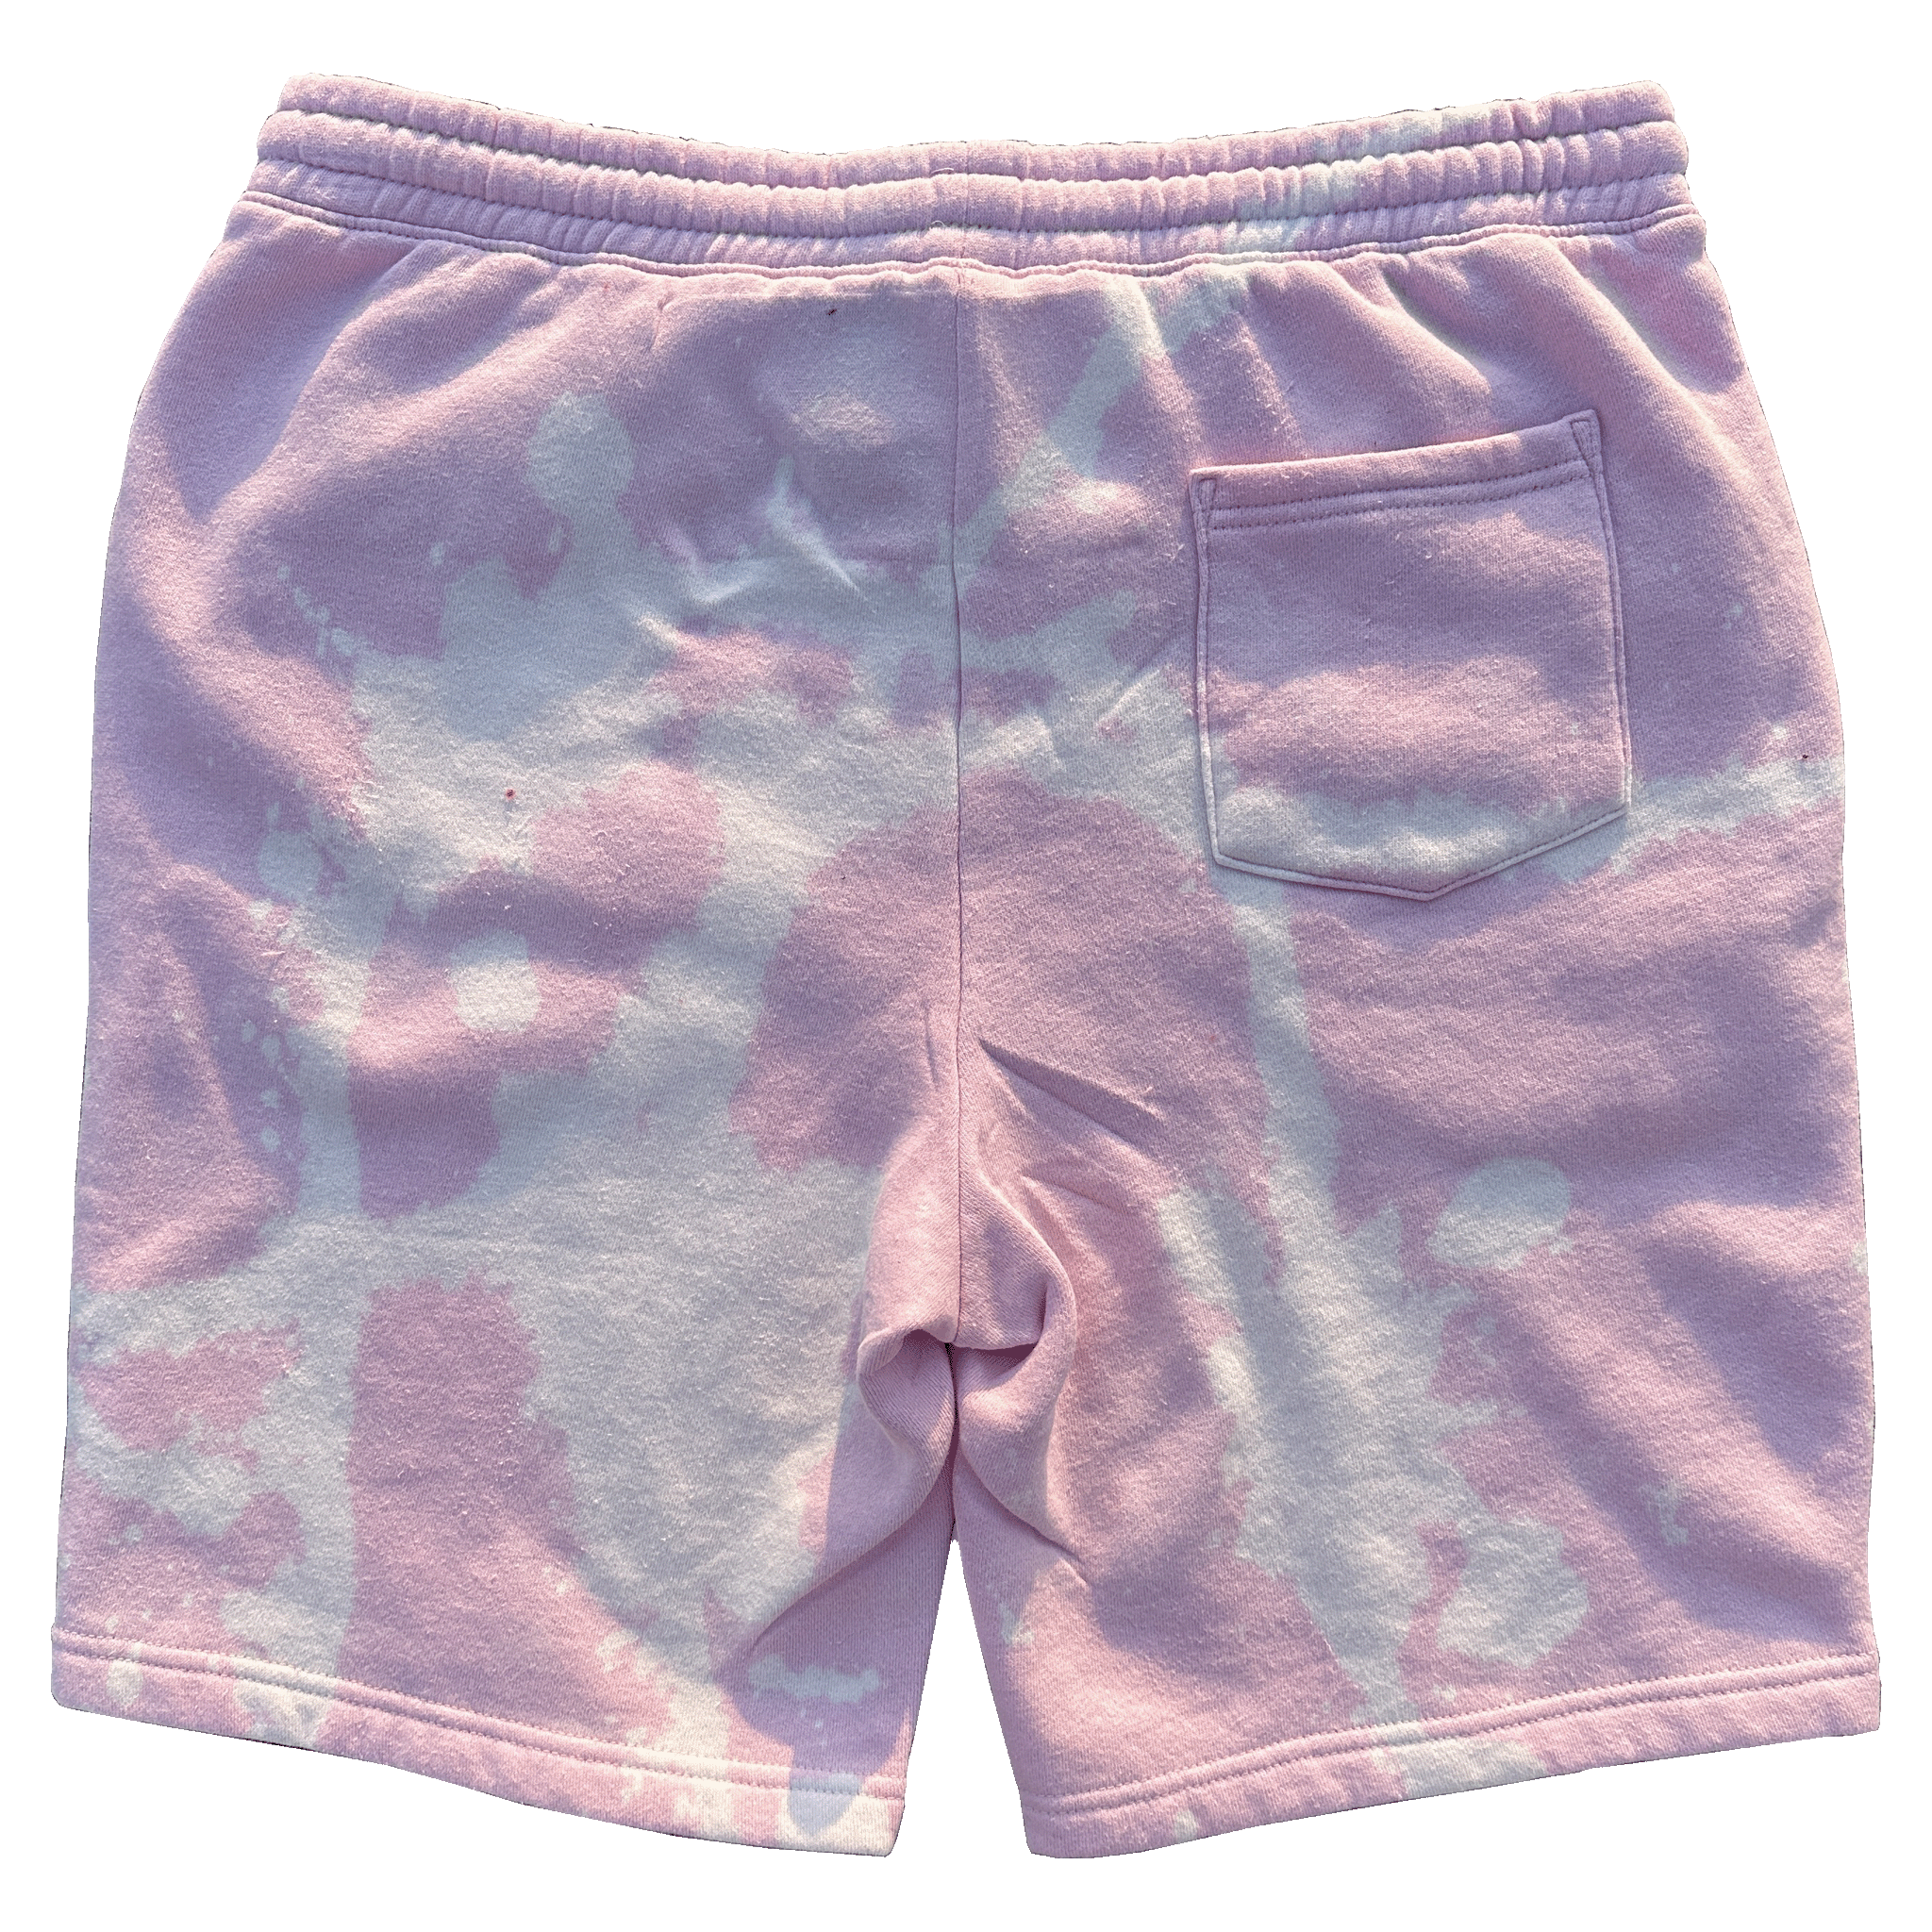 Teri & Friends Sponge Bleached Shorts